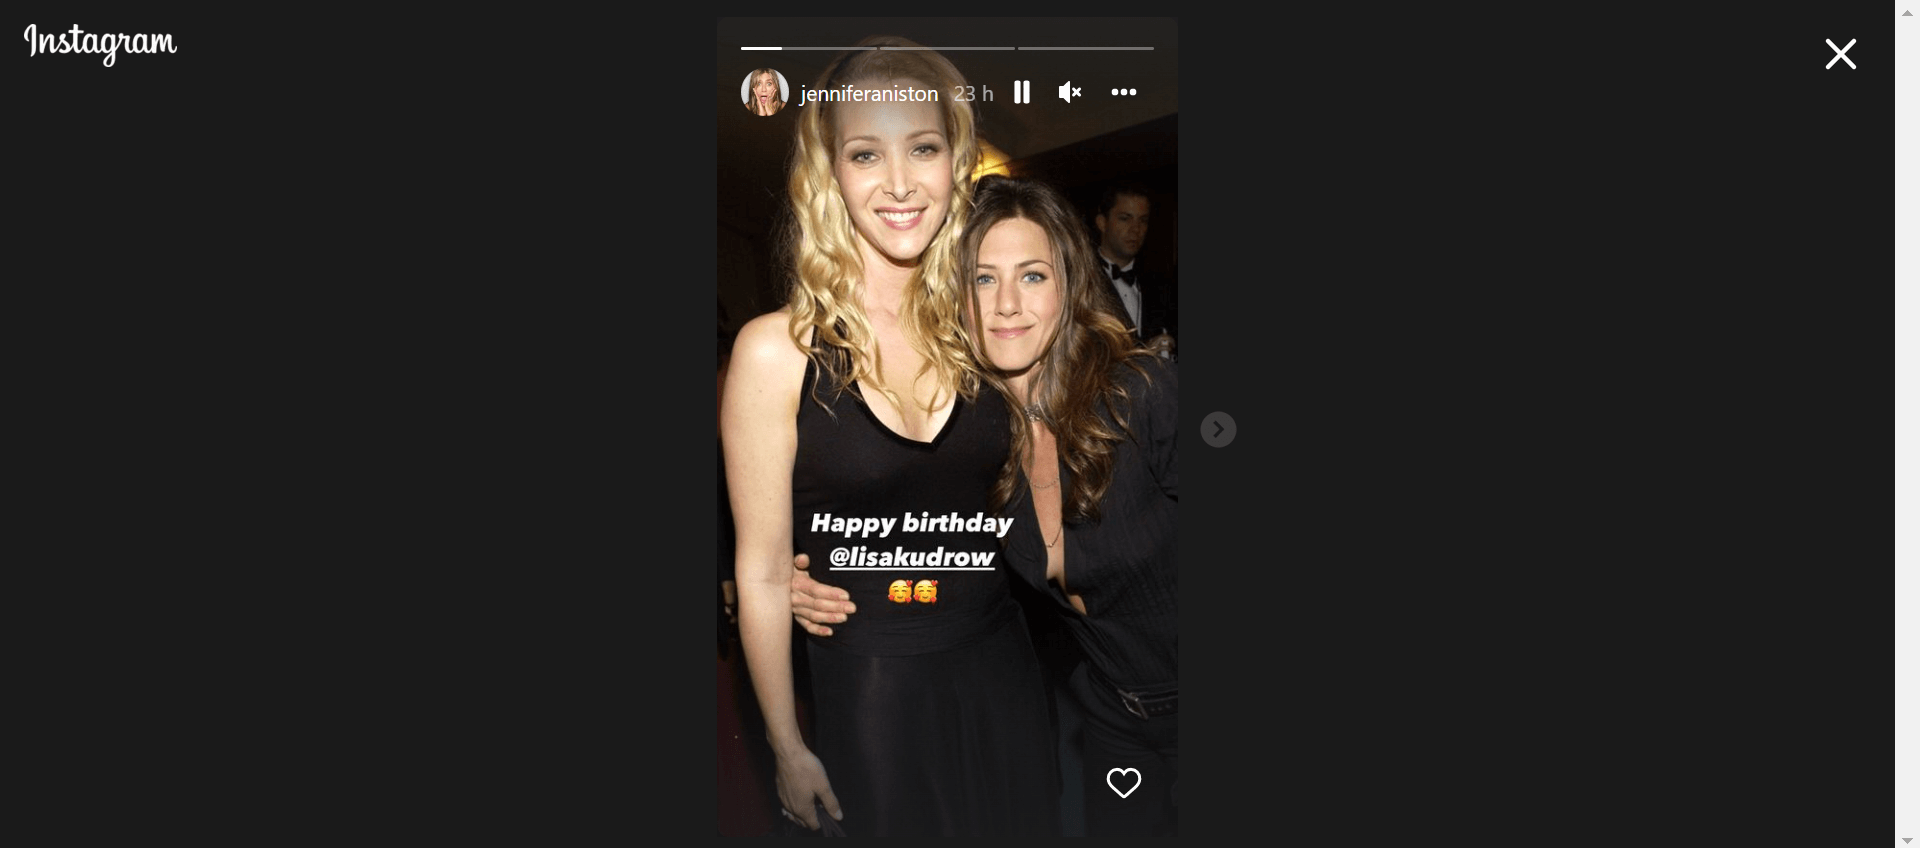 Jennifer Aniston and Lisa Kudrow